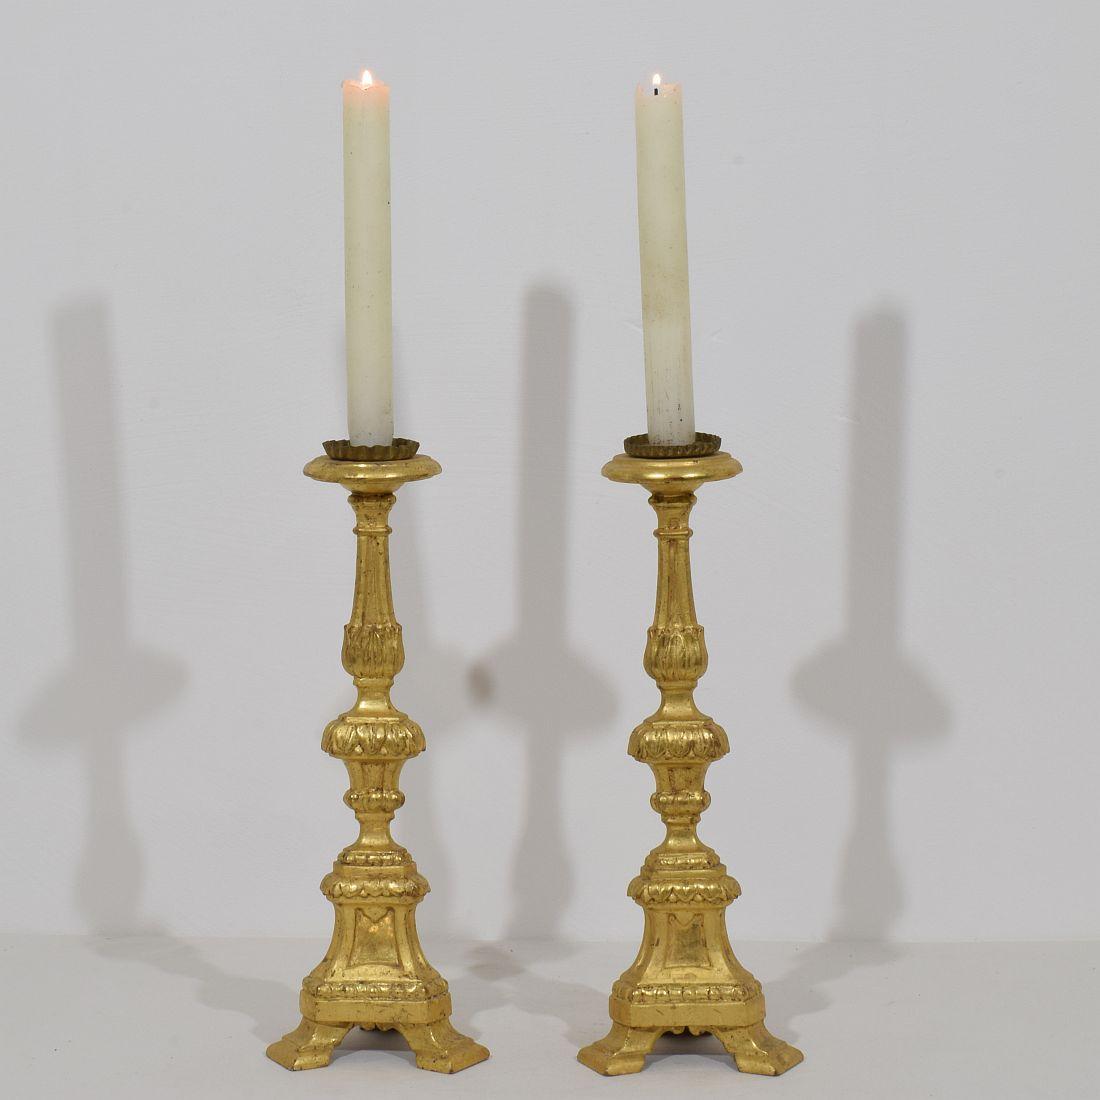 Großartiges Paar hölzerner Kerzenhalter mit ihrer ursprünglichen Vergoldung.
Sehr schöner Kerzentyp und selten in einem Paar zu finden.
Italien, um 1780-1800.
Verwittert, alte Reparatur
Die Messungen umfassen die Metallspitze.